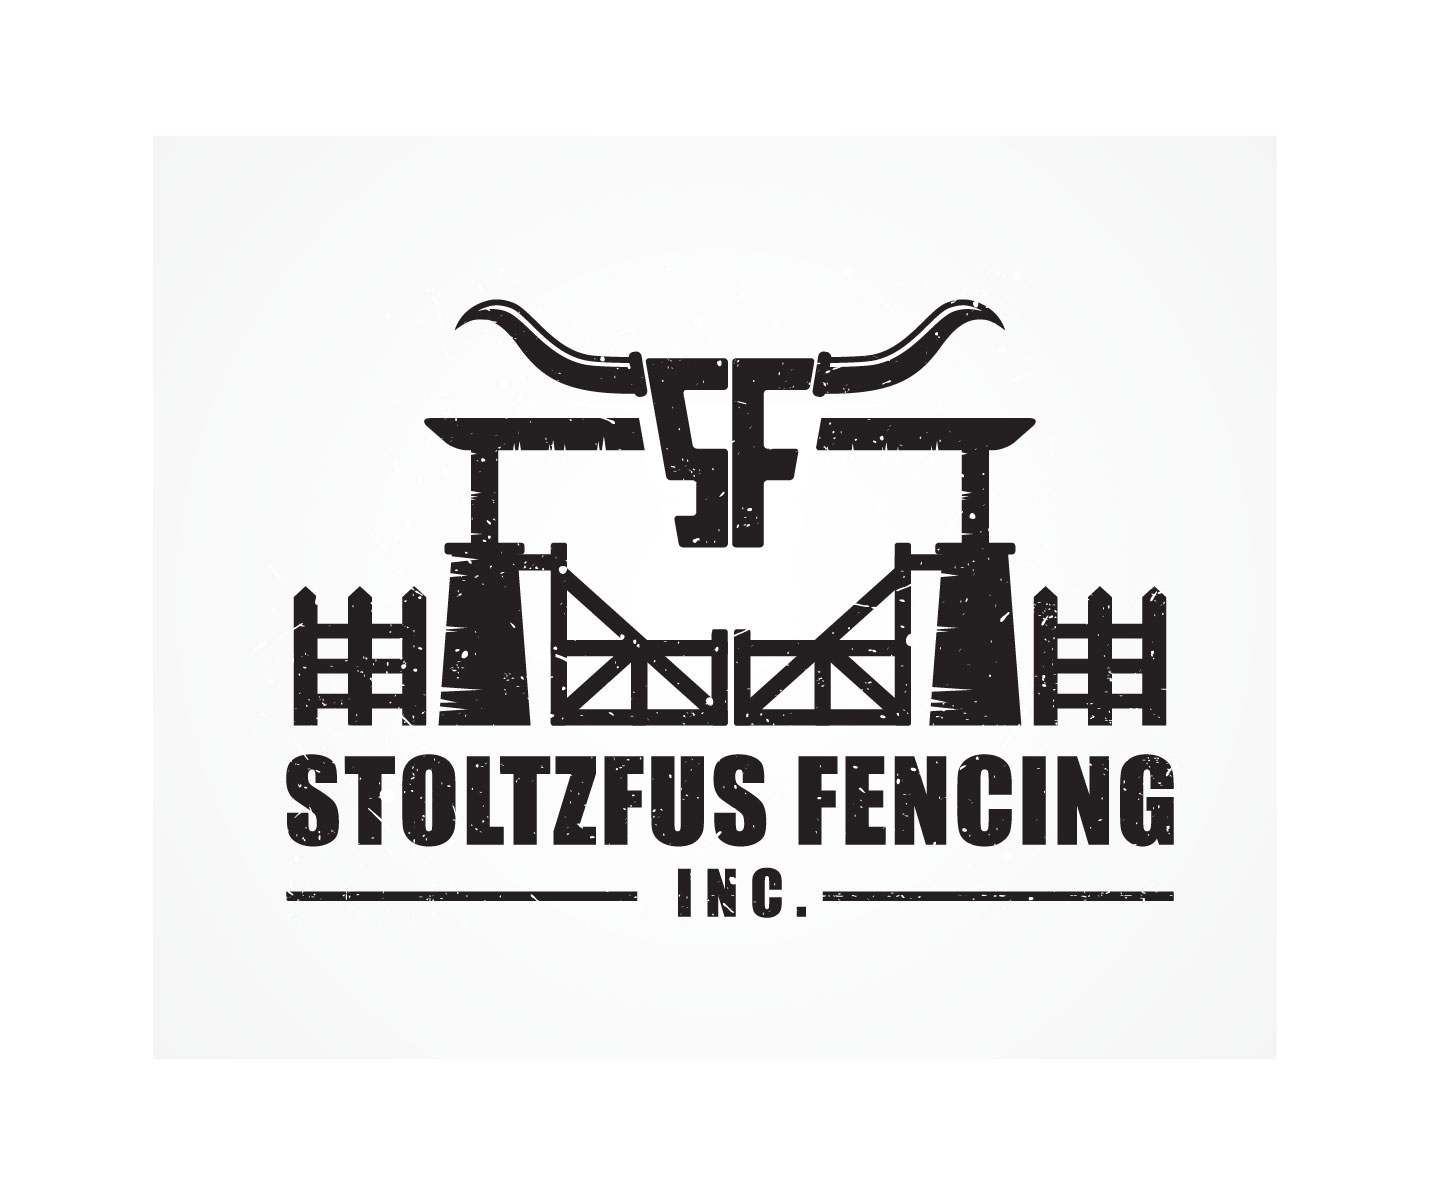 fencing logo ideas 2